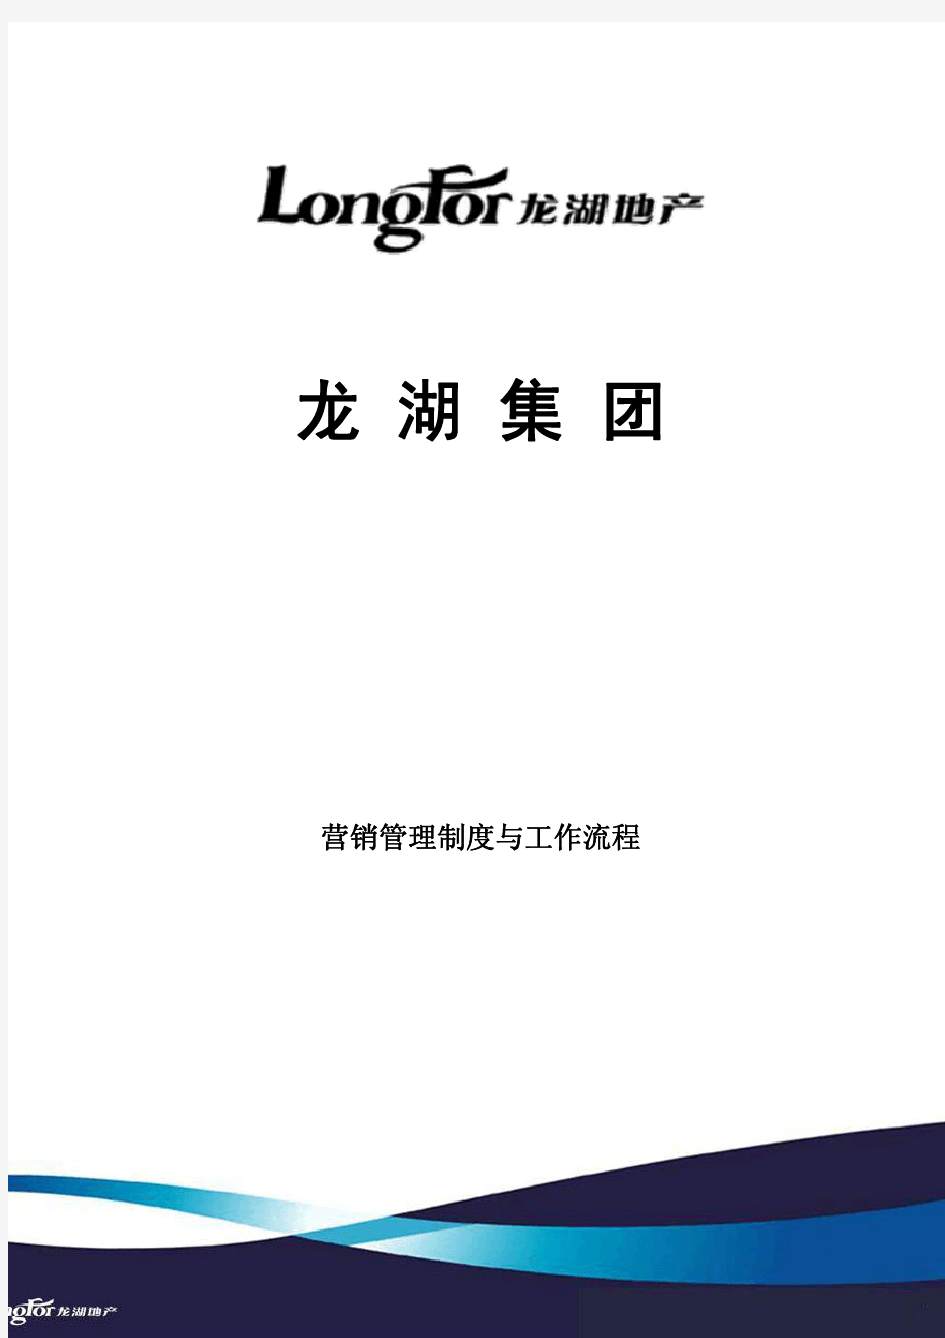 龙湖地产品牌推广与客户管理工作制度及流程(34)页